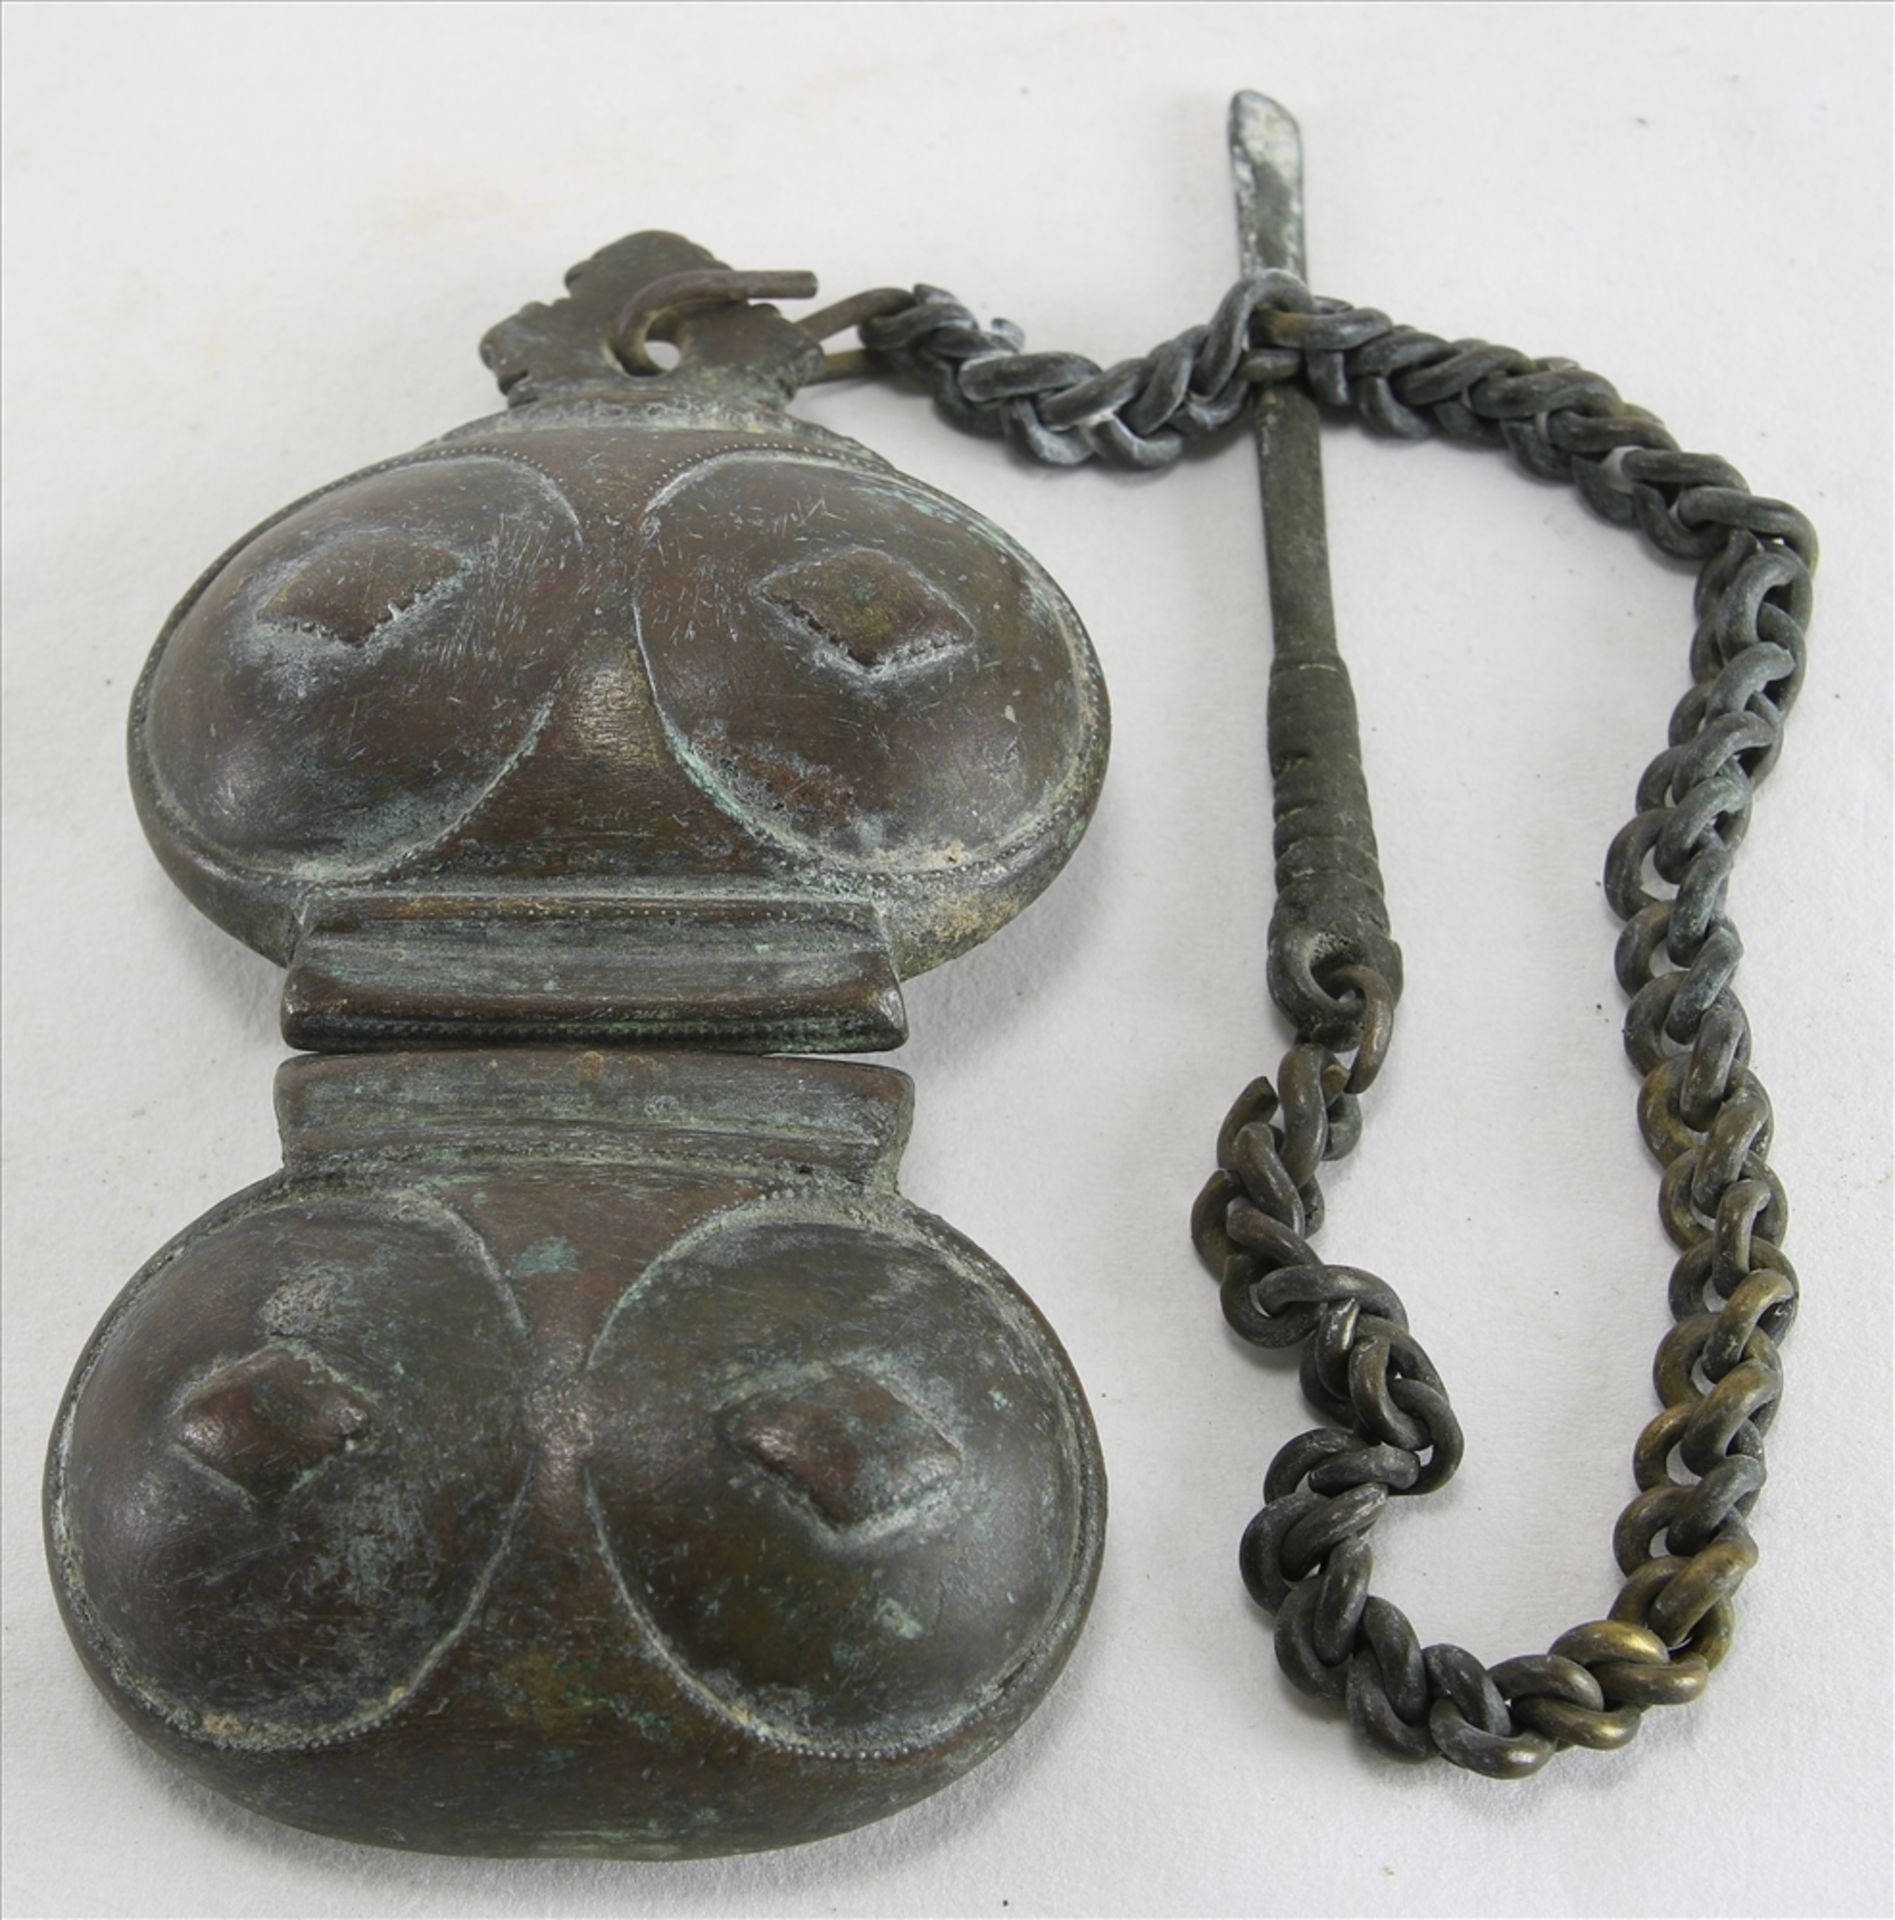 Konvolut Asiatika Um 1900. Amulettbehälter und Dosen etc. Unterschiedliche Metalle und Formen. - Image 17 of 20